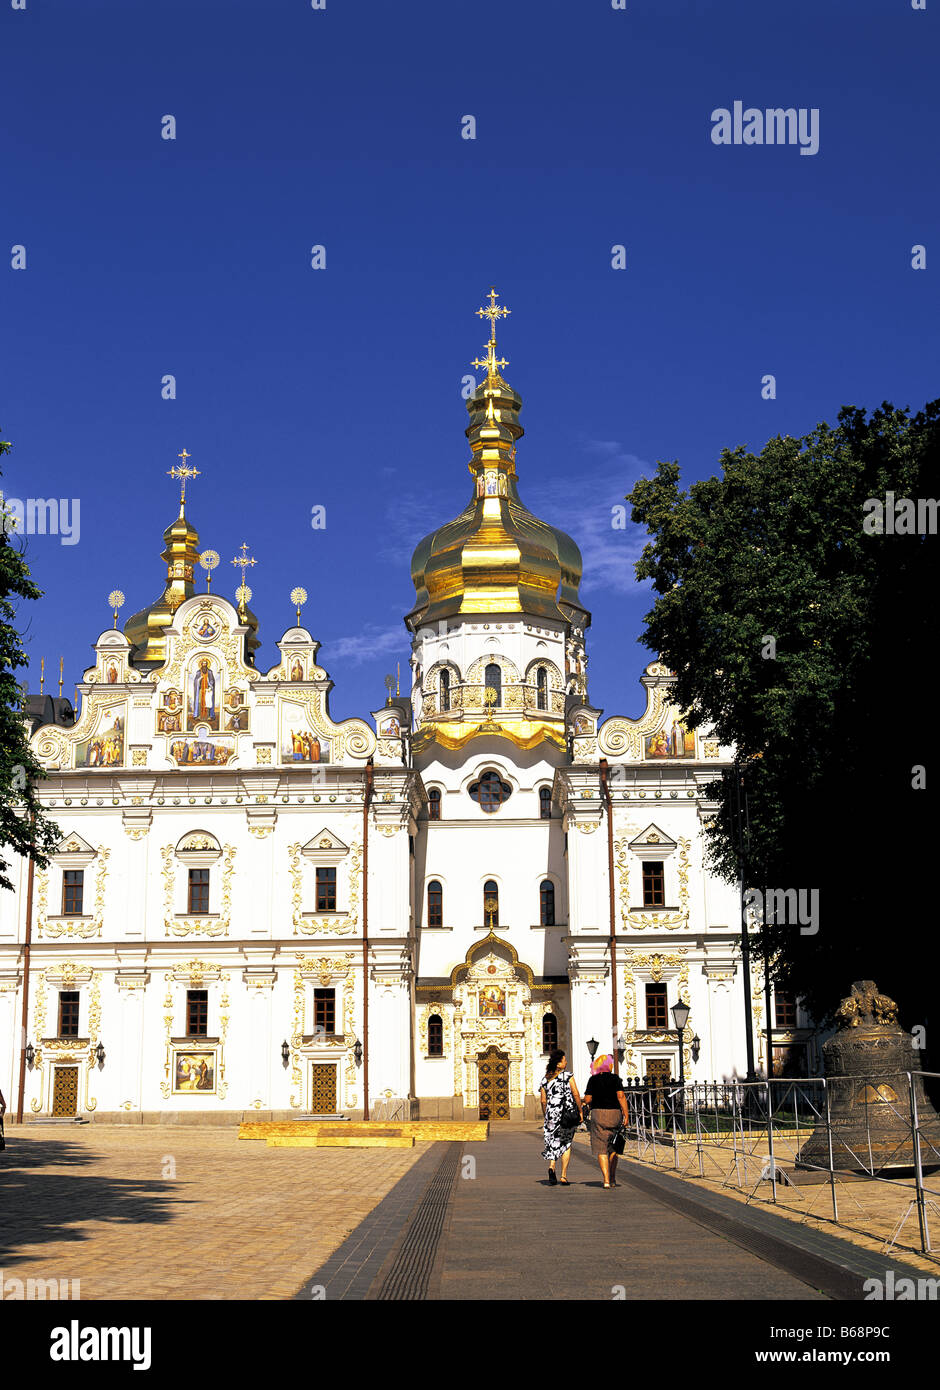 Chiesa dell'Assunzione Percherska Lavra ortodossi monastero delle Grotte cattedrale della Dormizione Kiev Ucraina Foto Stock